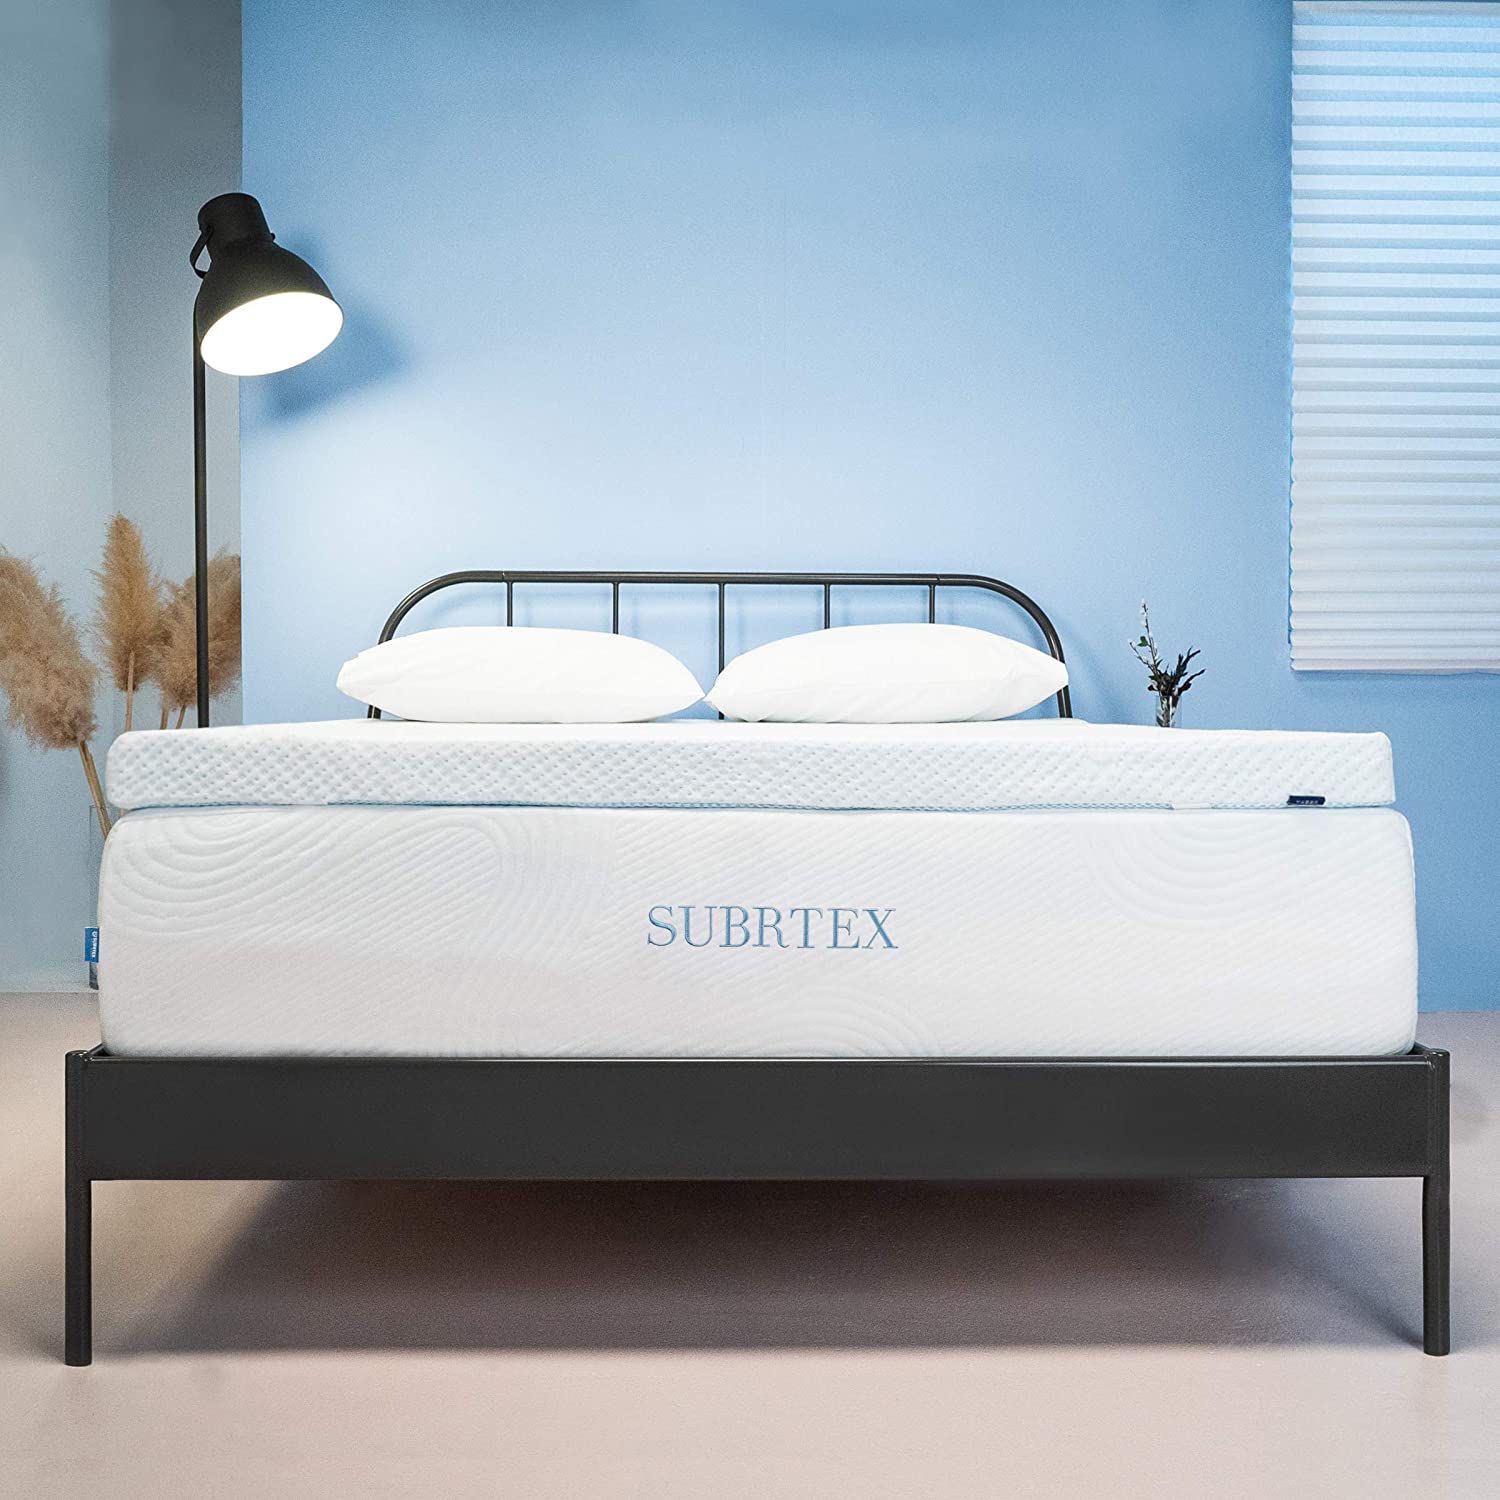 subrtex Bed Mattress Topper